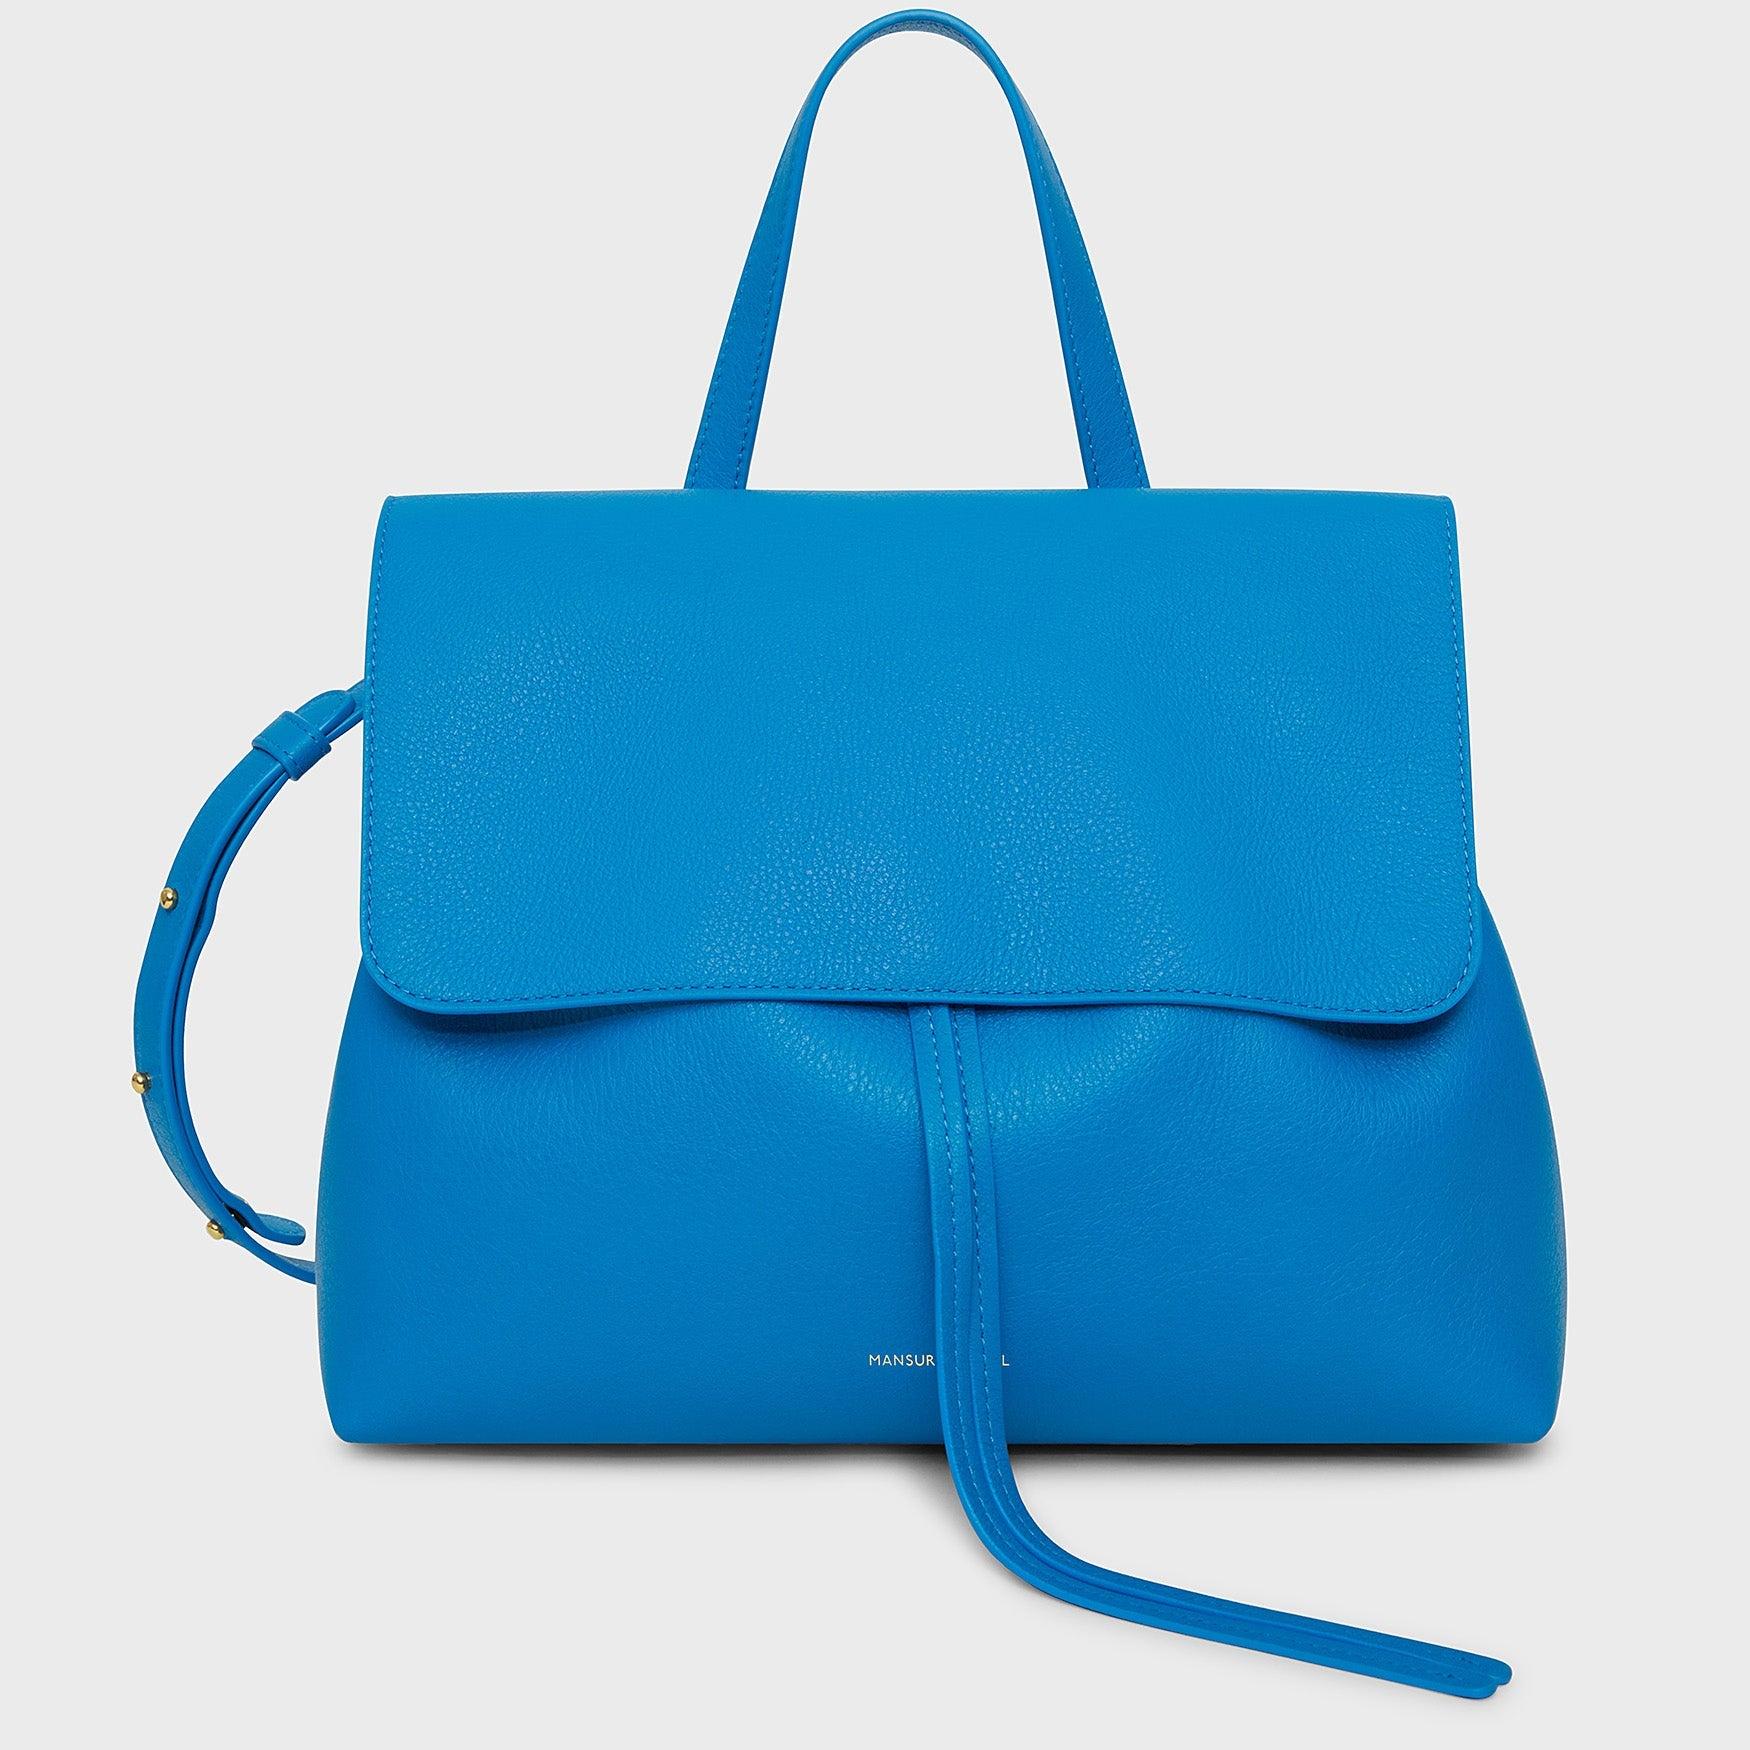 Mansur Gavriel Bucket Bag, Blue Suede, Large